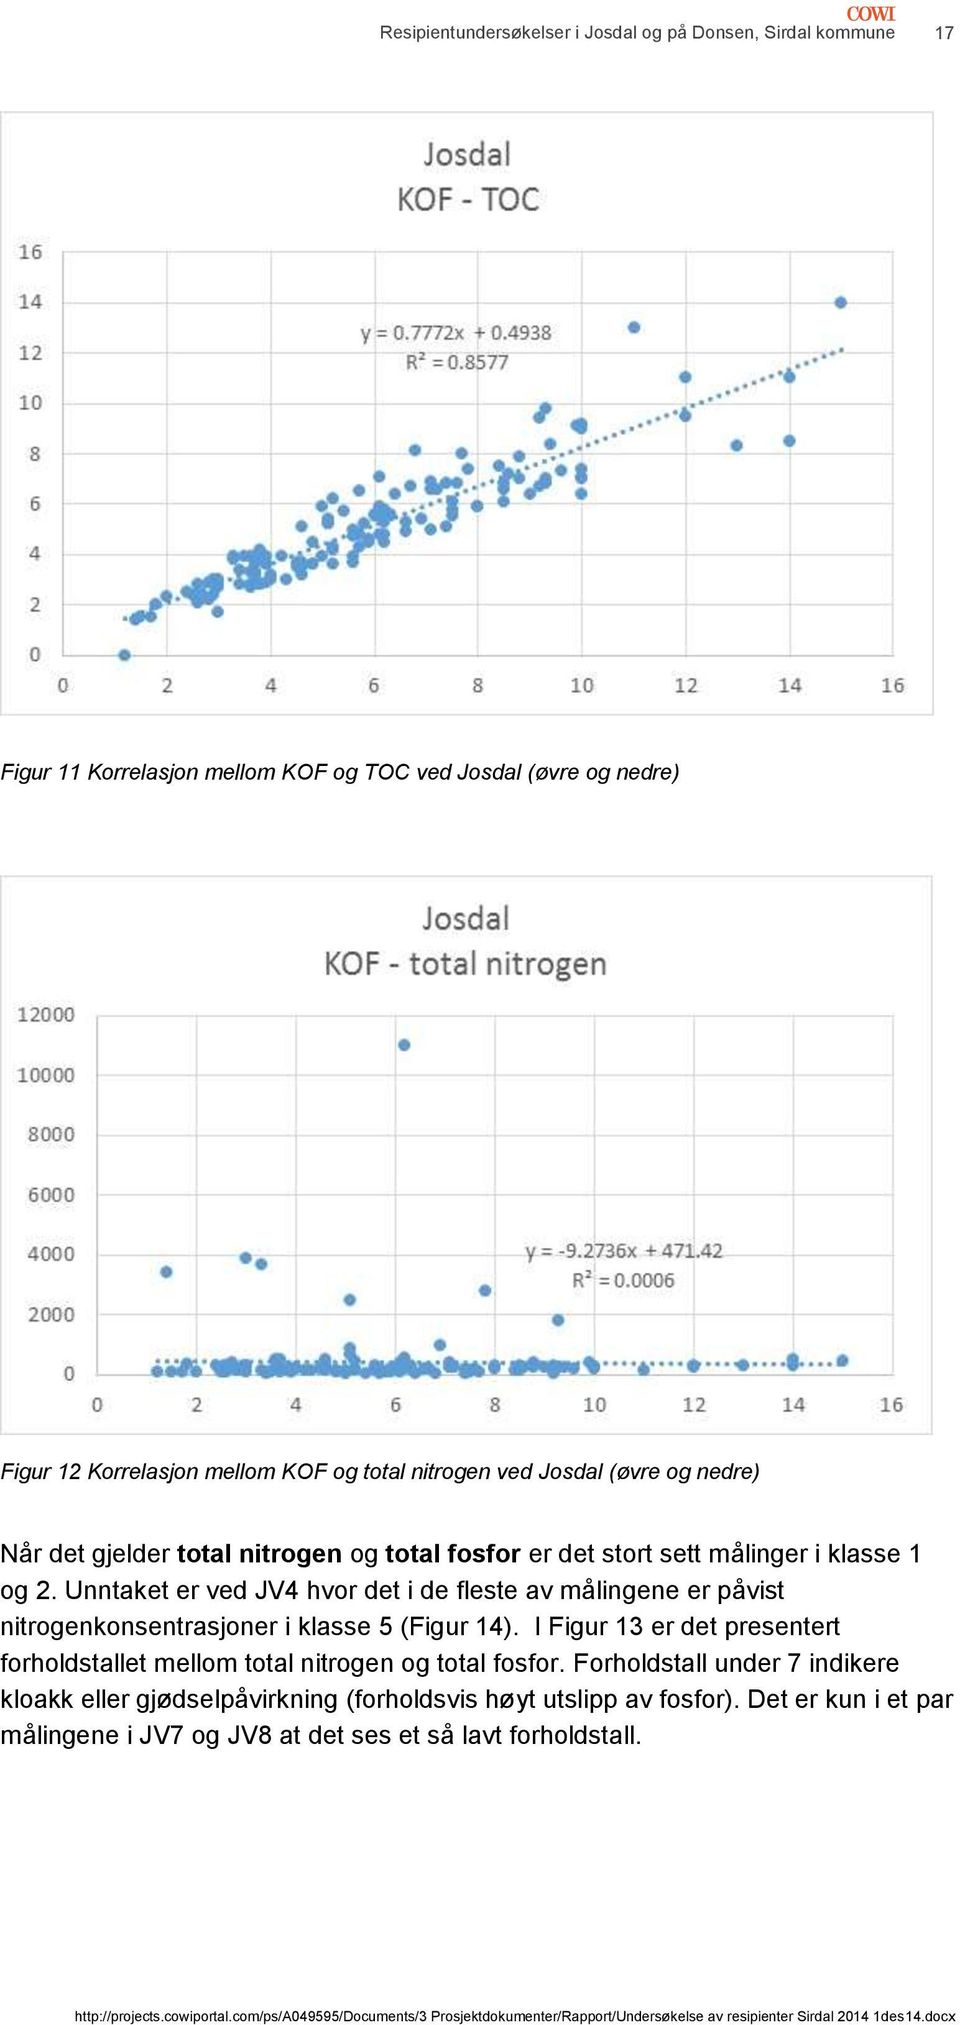 Unntaket er ved JV4 hvor det i de fleste av målingene er påvist nitrogenkonsentrasjoner i klasse 5 (Figur 14).